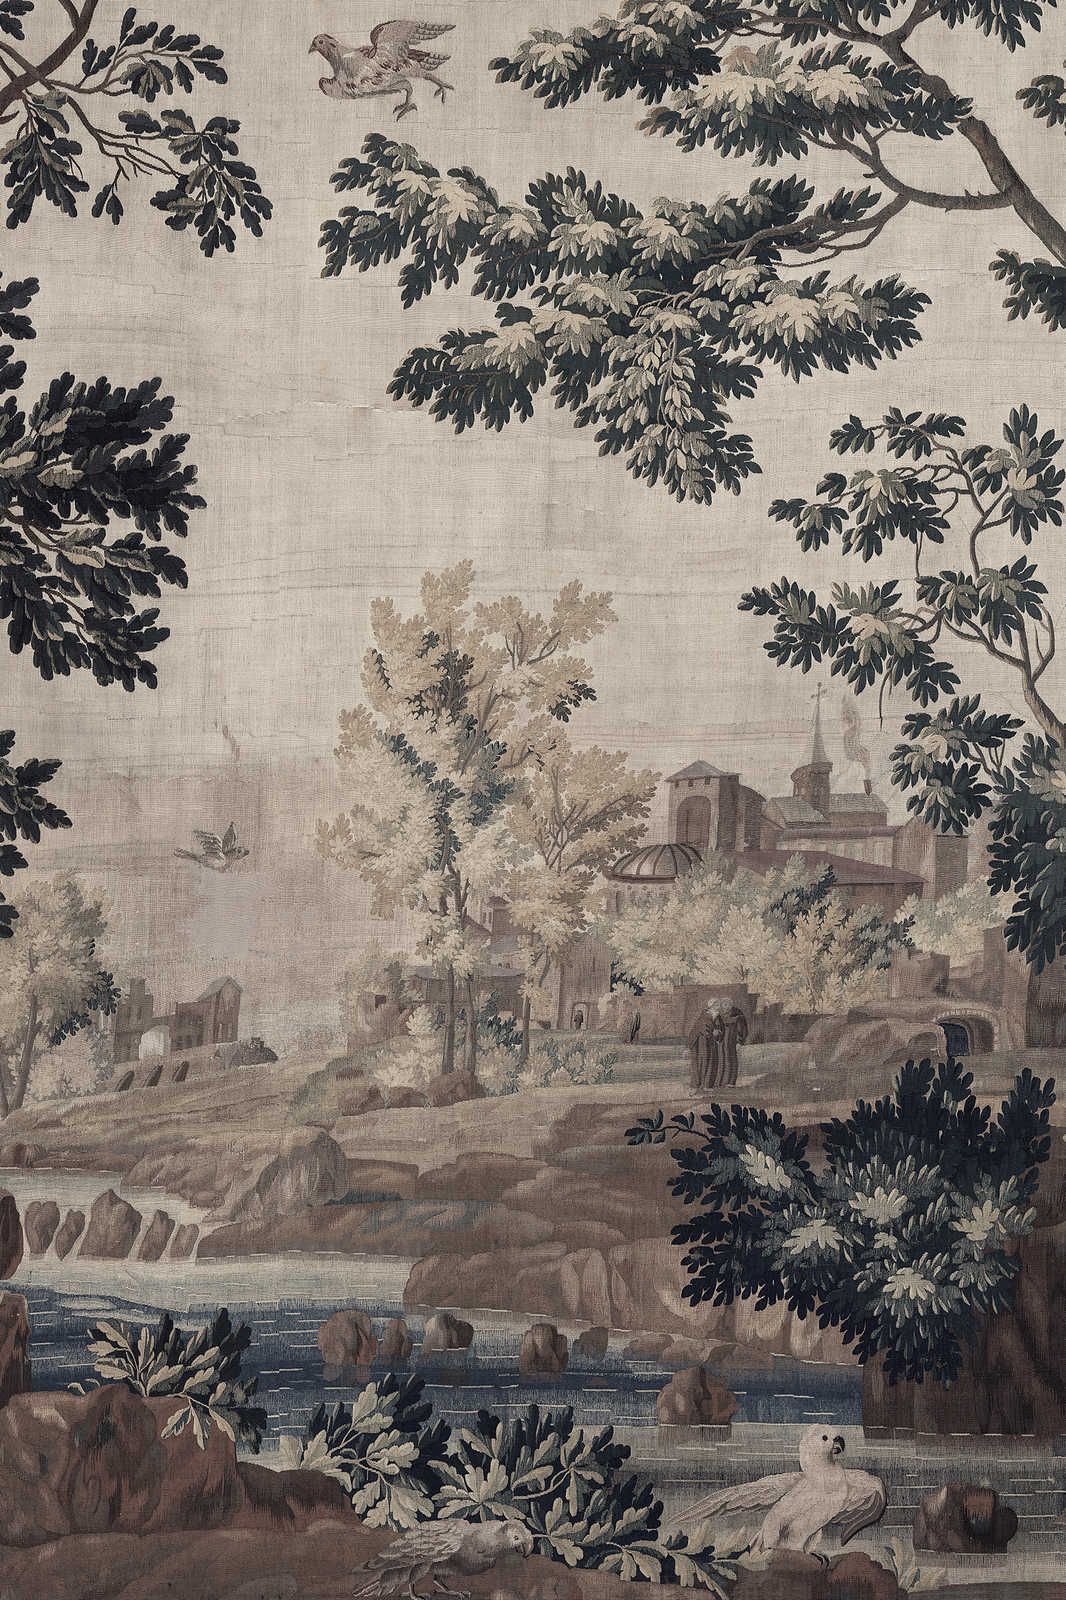             Gobelin Gallery 1 - Paysage toile tapisserie historique - 0,90 m x 0,60 m
        